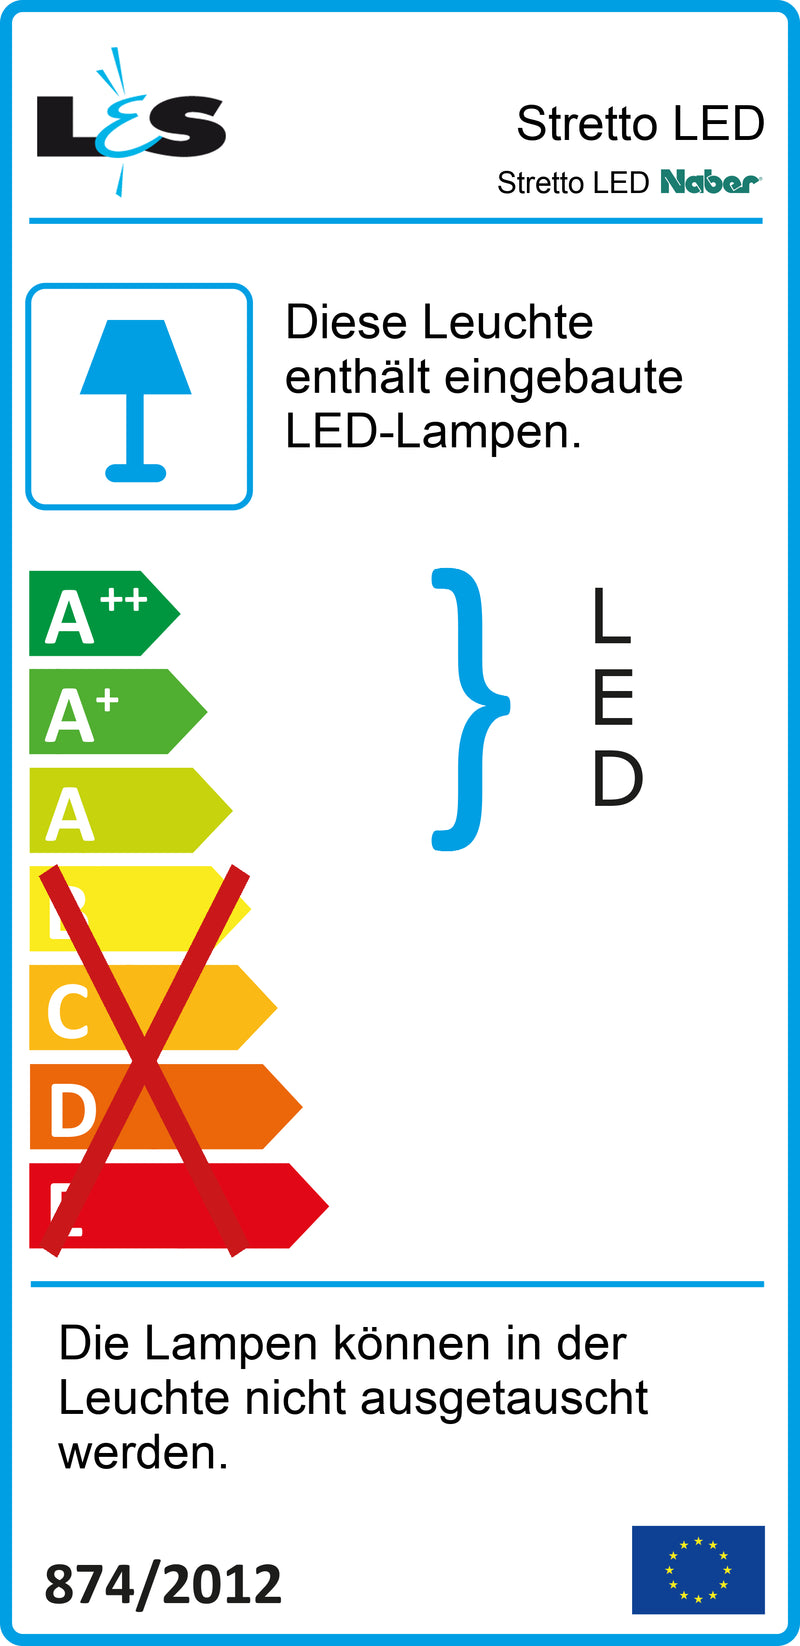 E-Label zu Zeichnung zu Stretto LED als Variante Set-5 von Naber GmbH in der Kategorie Lichttechnik in Österreich auf conceptshop.at